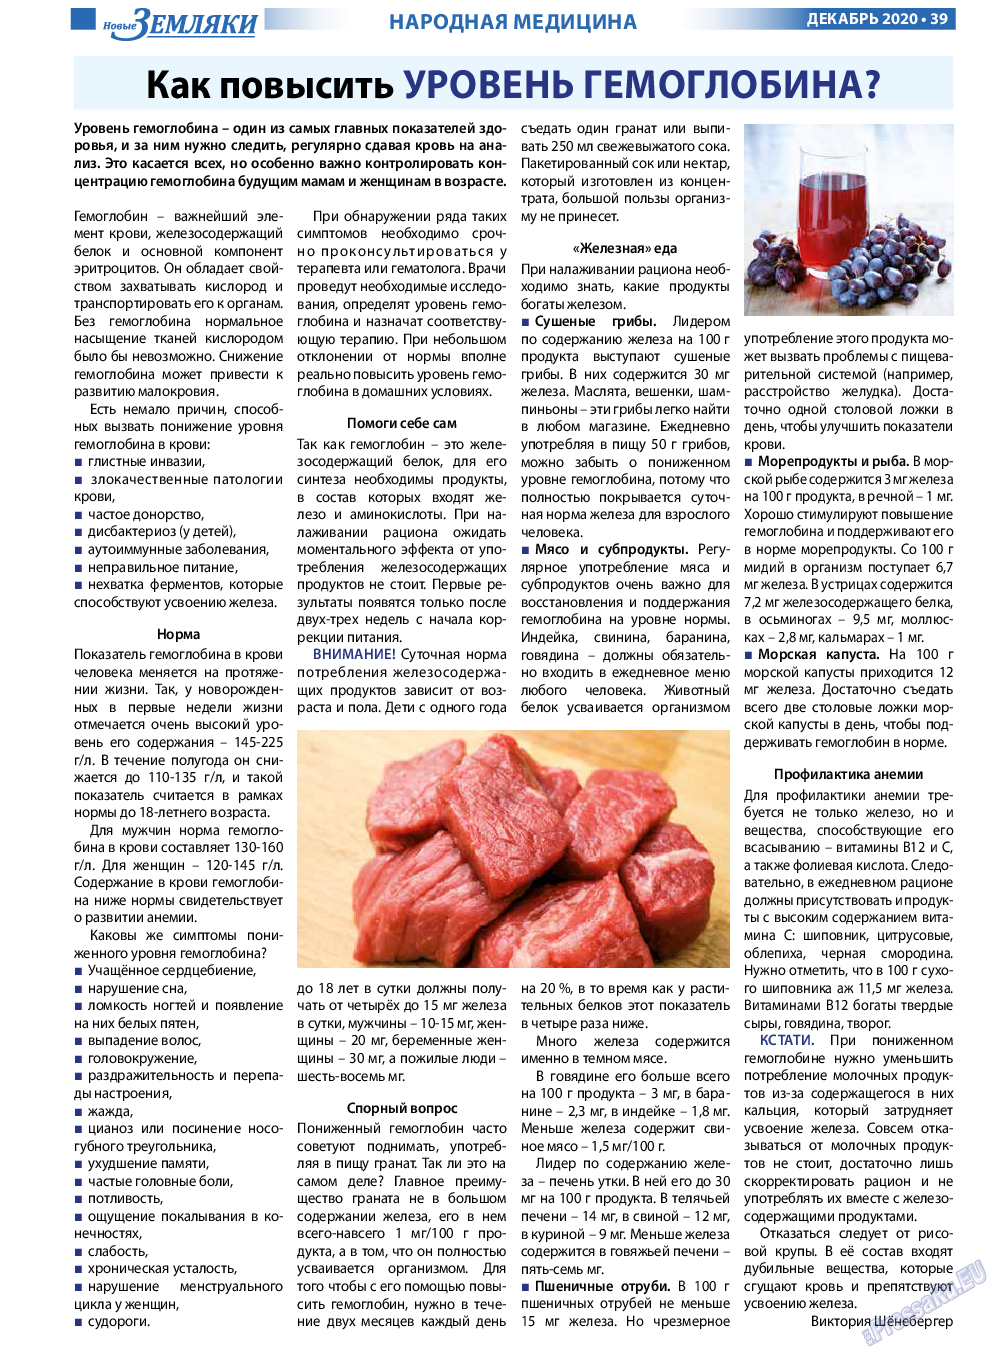 Новые Земляки, газета. 2020 №12 стр.39